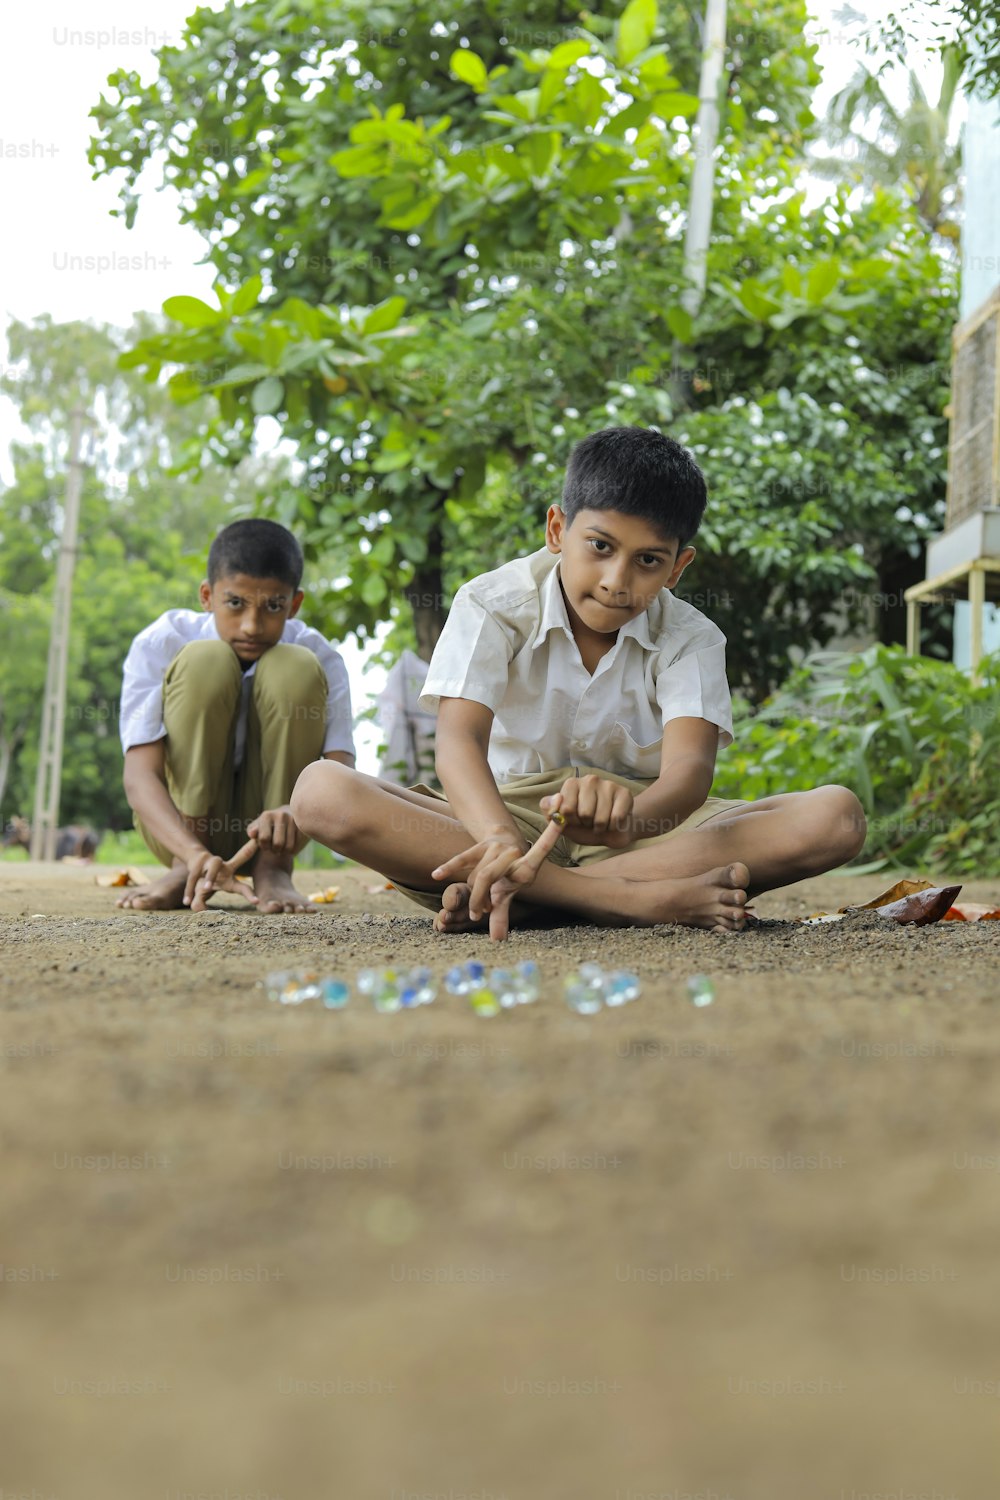 古いインドの村のゲームであるガラスのビー玉で遊ぶインドの子供。ガラスビー玉はヒンディー語でカンチャとも呼ばれます。